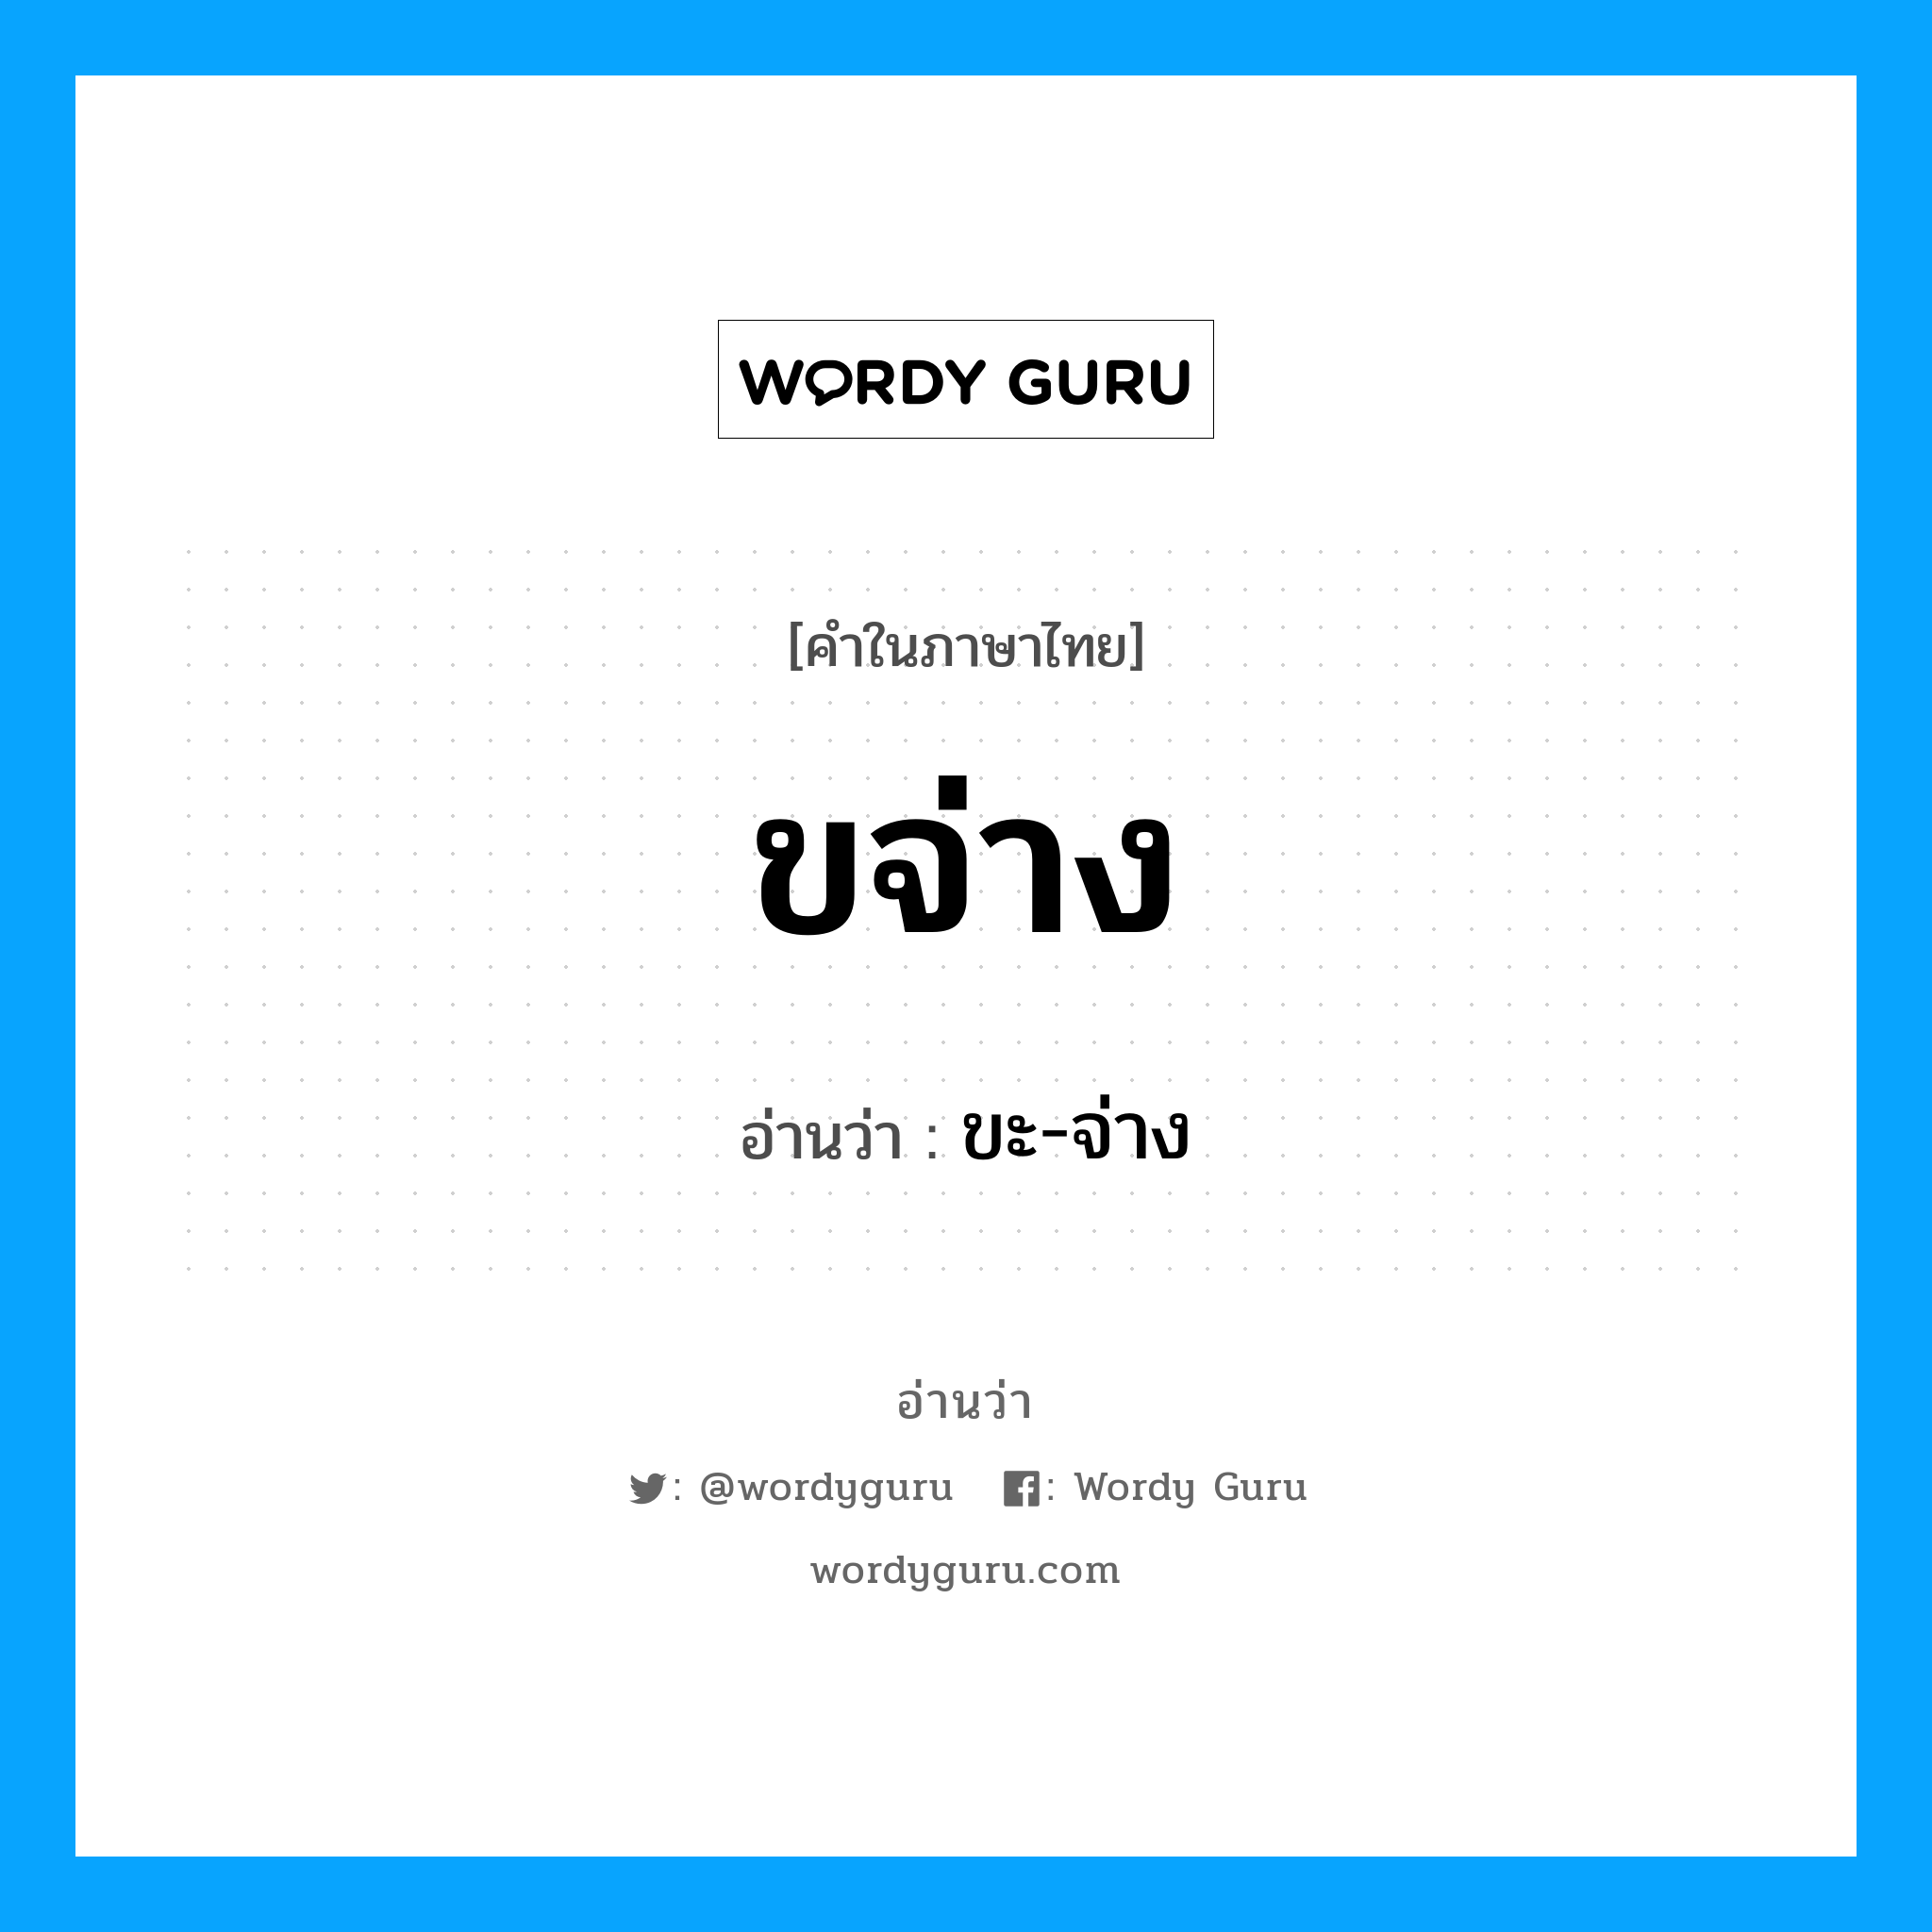 ขะ-จ่าง เป็นคำอ่านของคำไหน?, คำในภาษาไทย ขะ-จ่าง อ่านว่า ขจ่าง